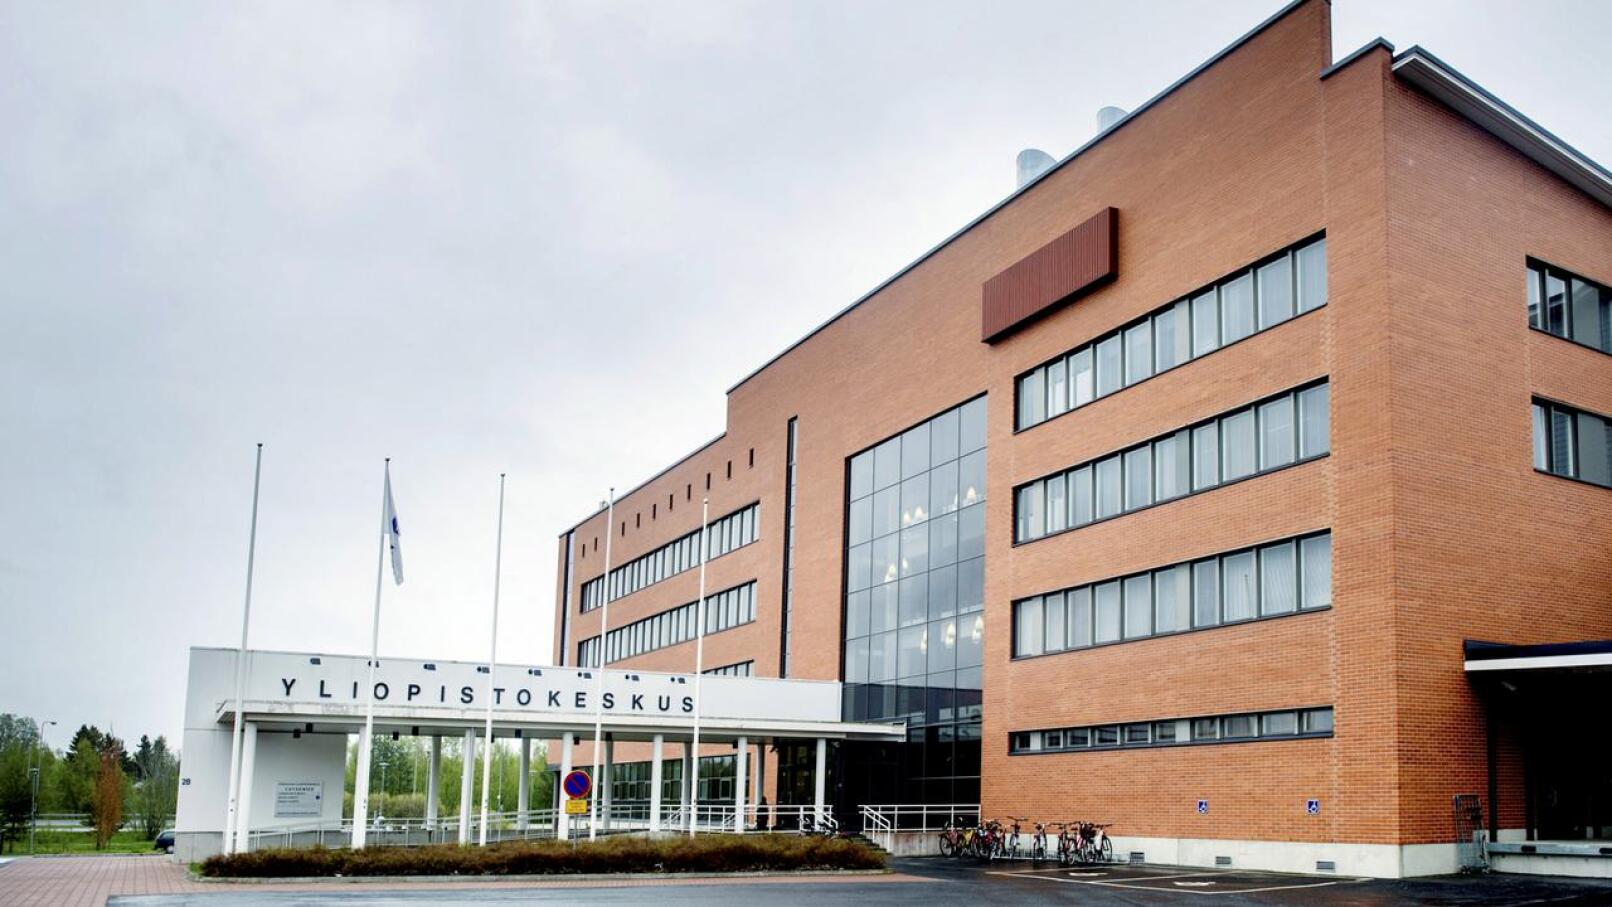 Kokkolan yliopistokeskus Chydeniuksen Jyväskylän yliopiston toimintoja koskevat yt-neuvottelut päättyivät.